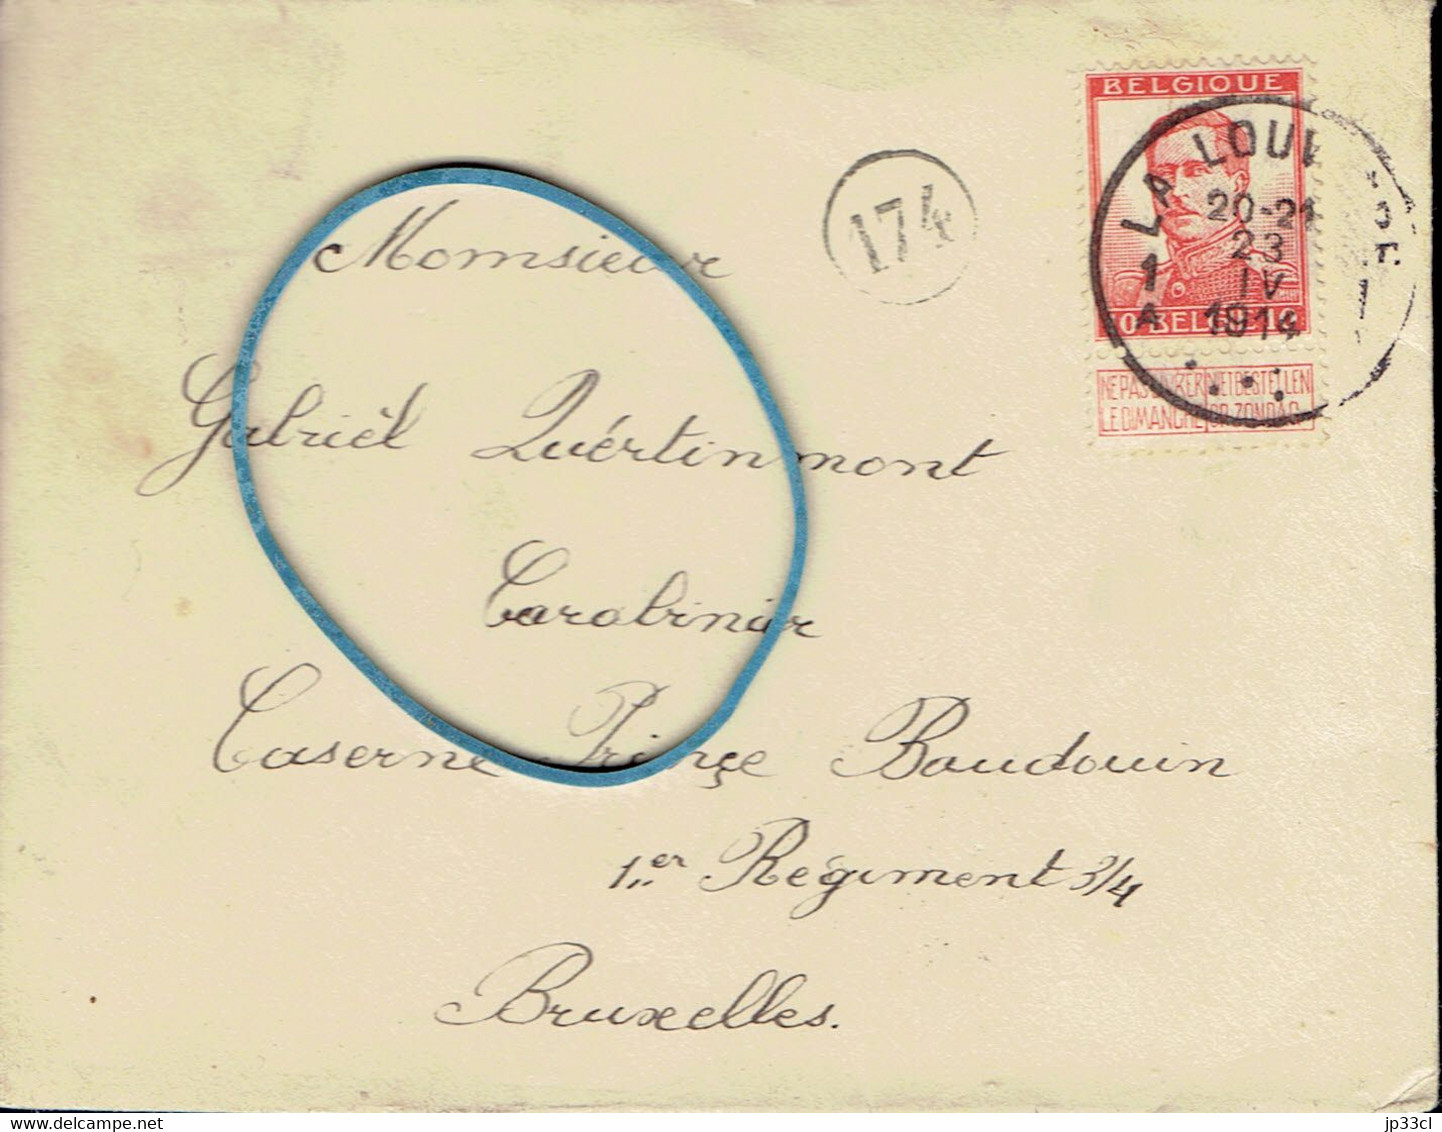 Enveloppe Adressée Au Soldat Gabriel Quertinmont, Carabinier, Caserne Prince Baudouin, Bxl (La Louvière, 23/04/1914) - Documents Historiques